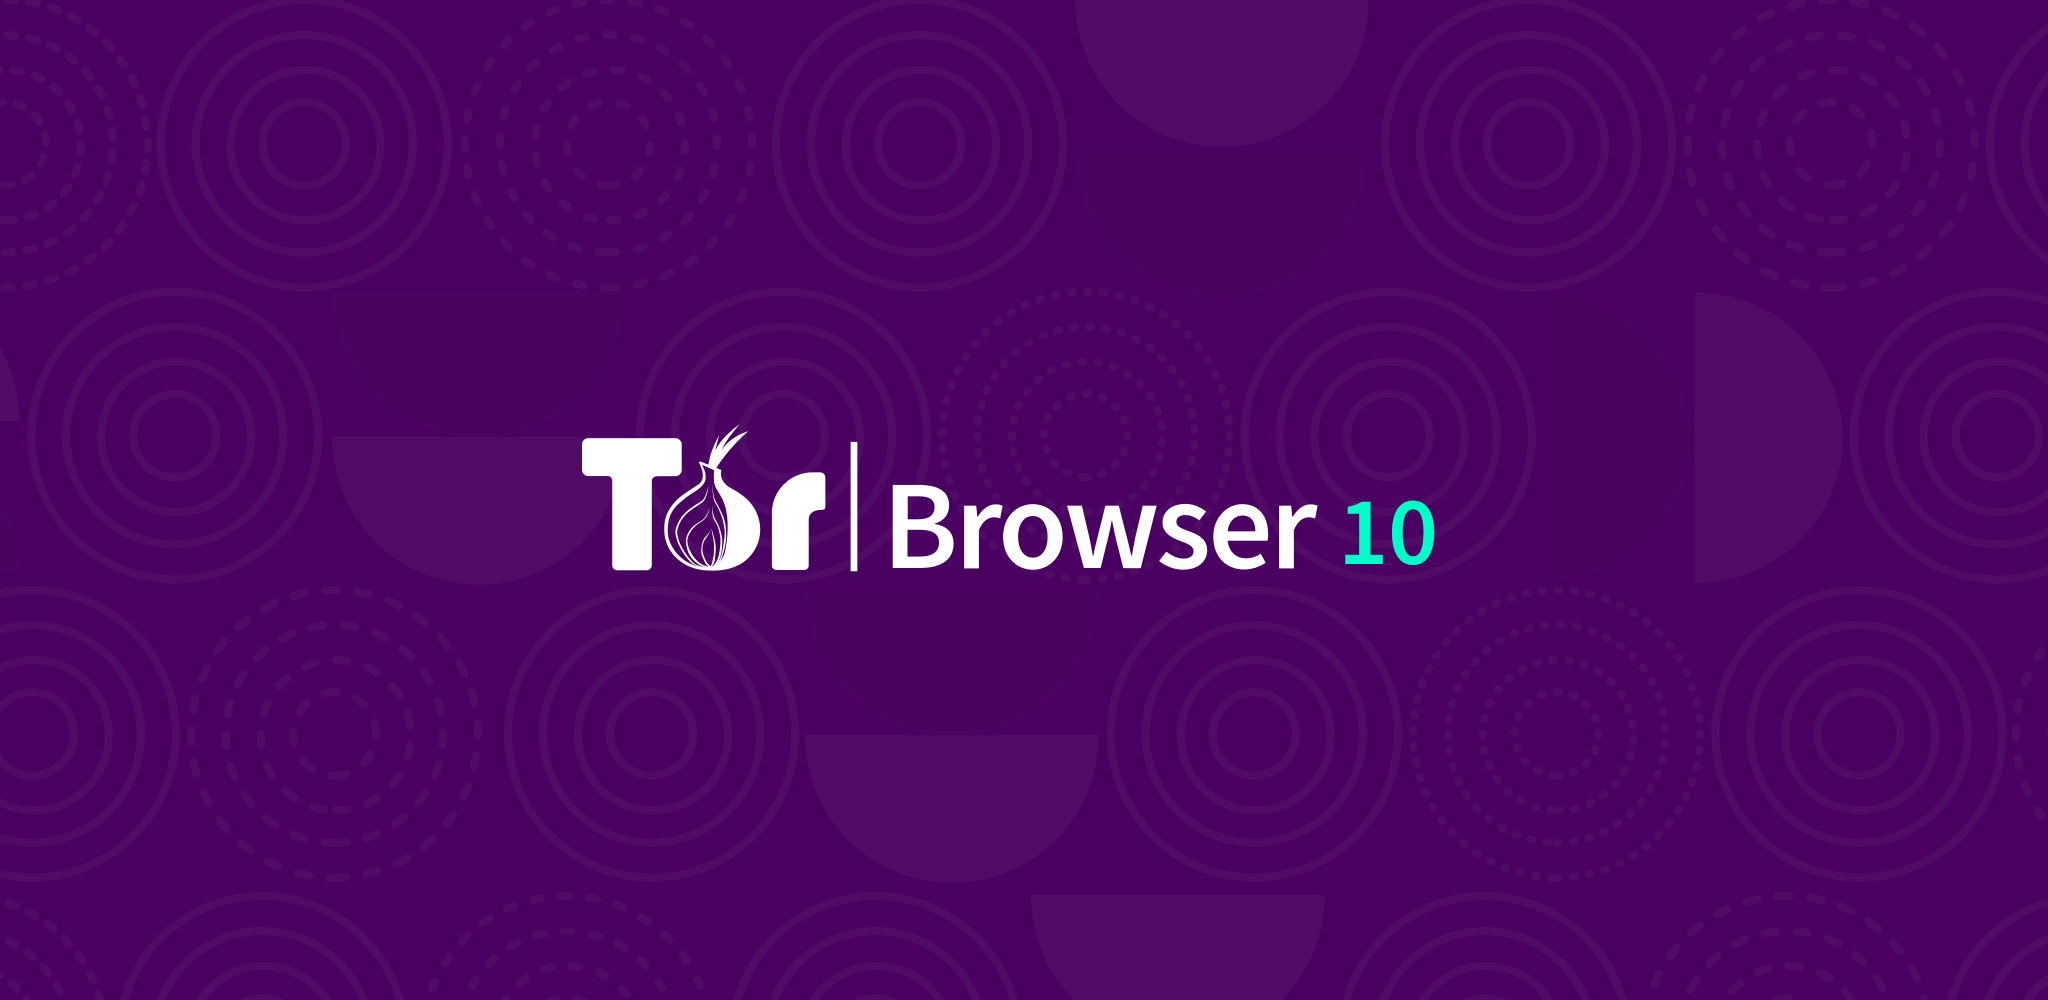 Tor browser upgrade mega tor browser update linux mega вход